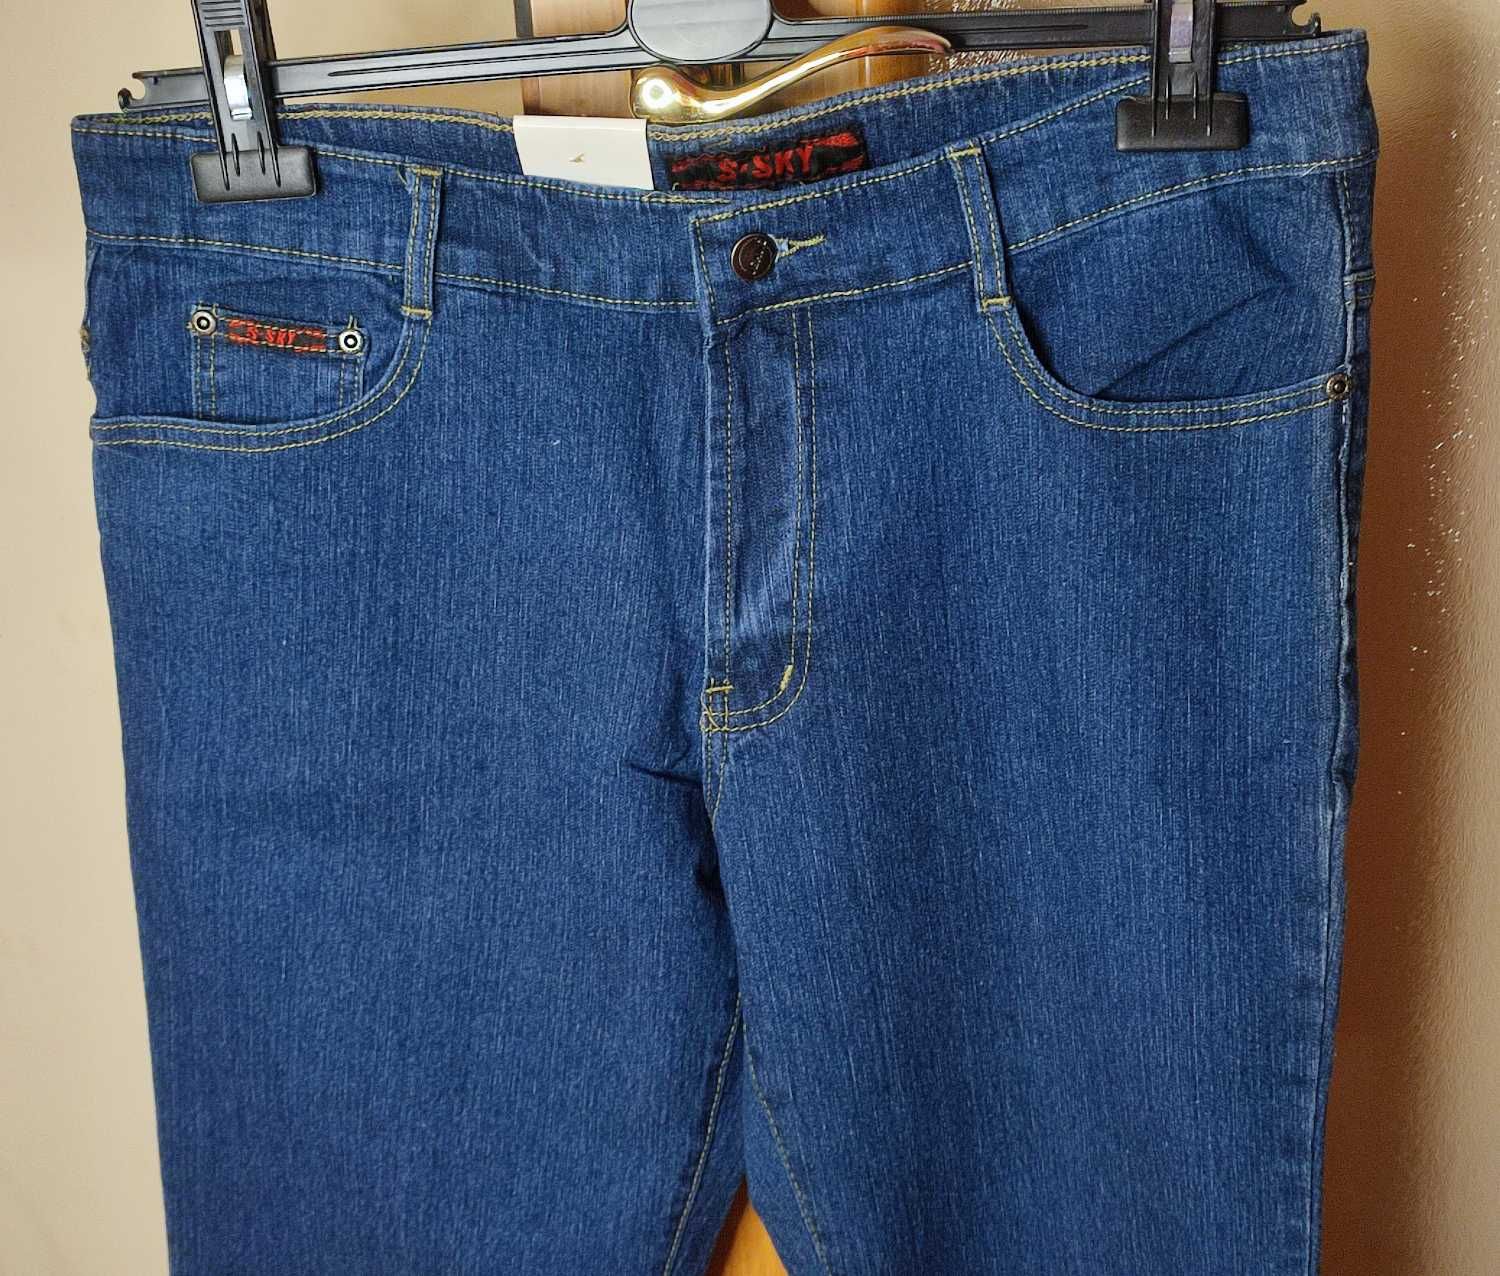 Spodnie damskie jeansowe wysoki stan 46